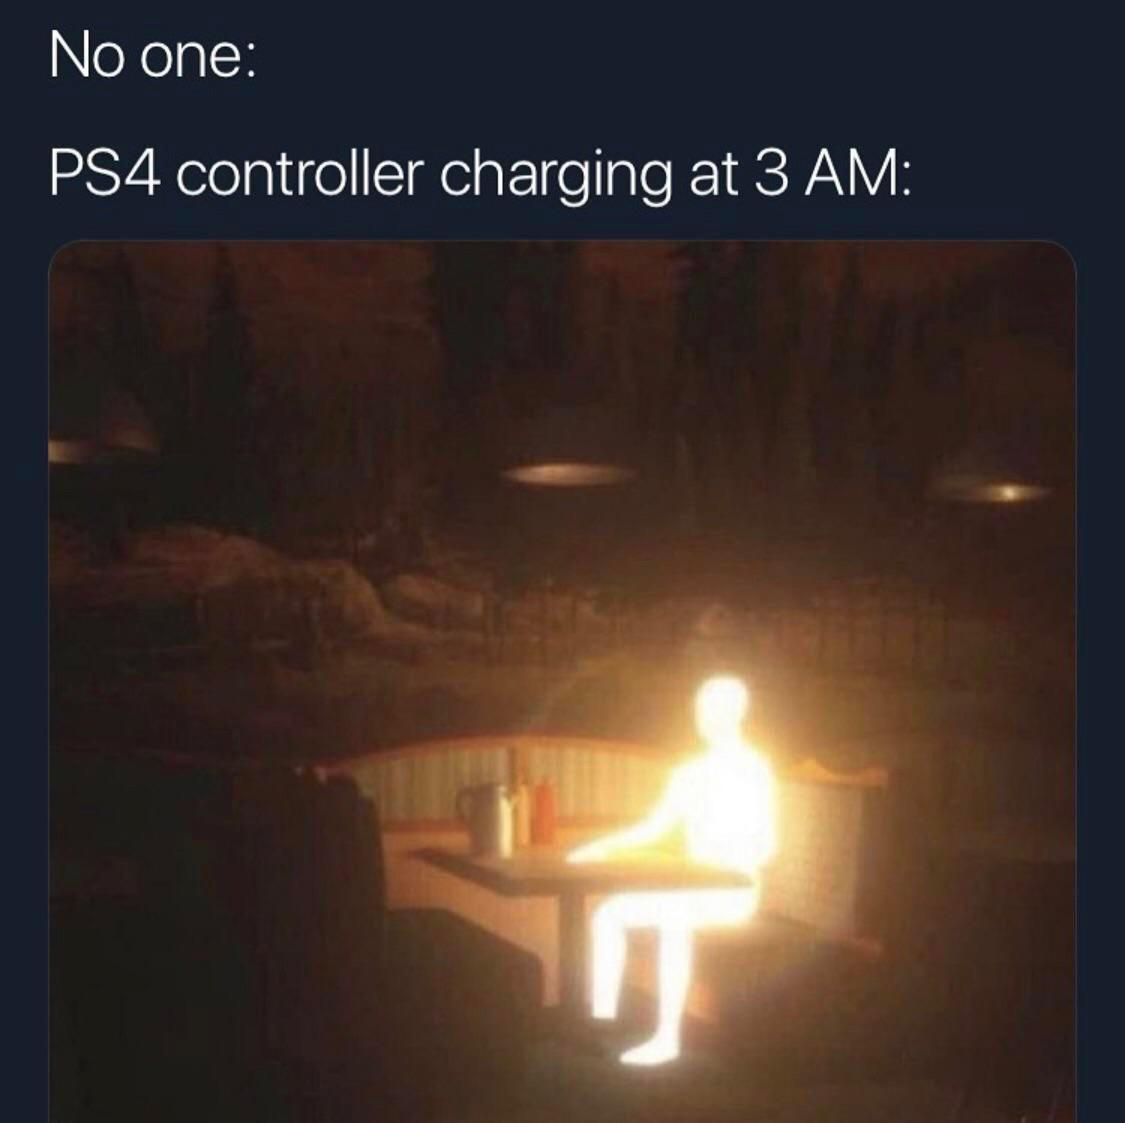 O led do PS4 é uma das coisas mais inúteis já inventada pela humanidade - meme